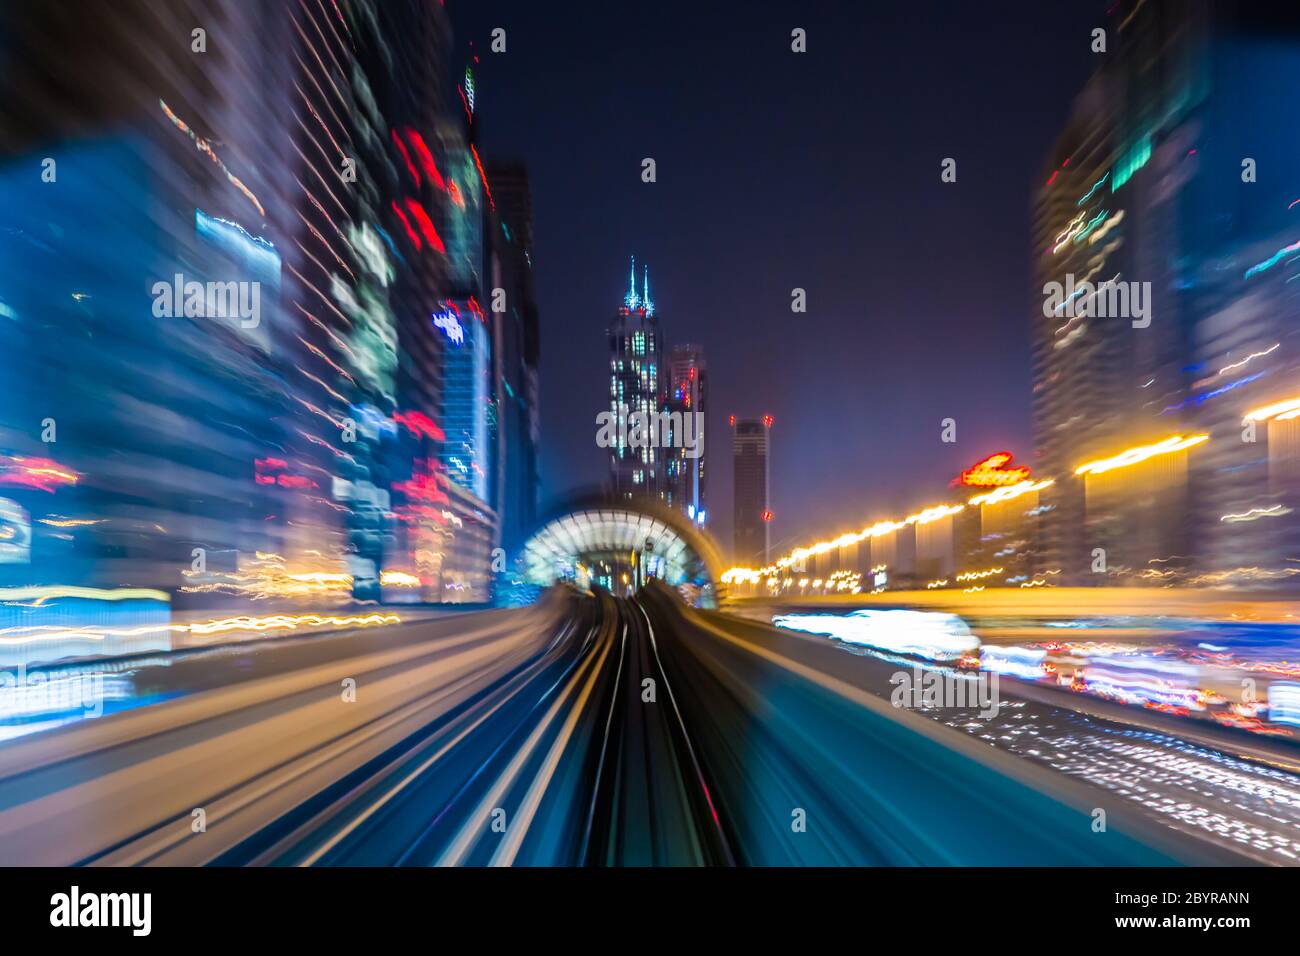 Dubai metro railway in motion blur Stock Photo